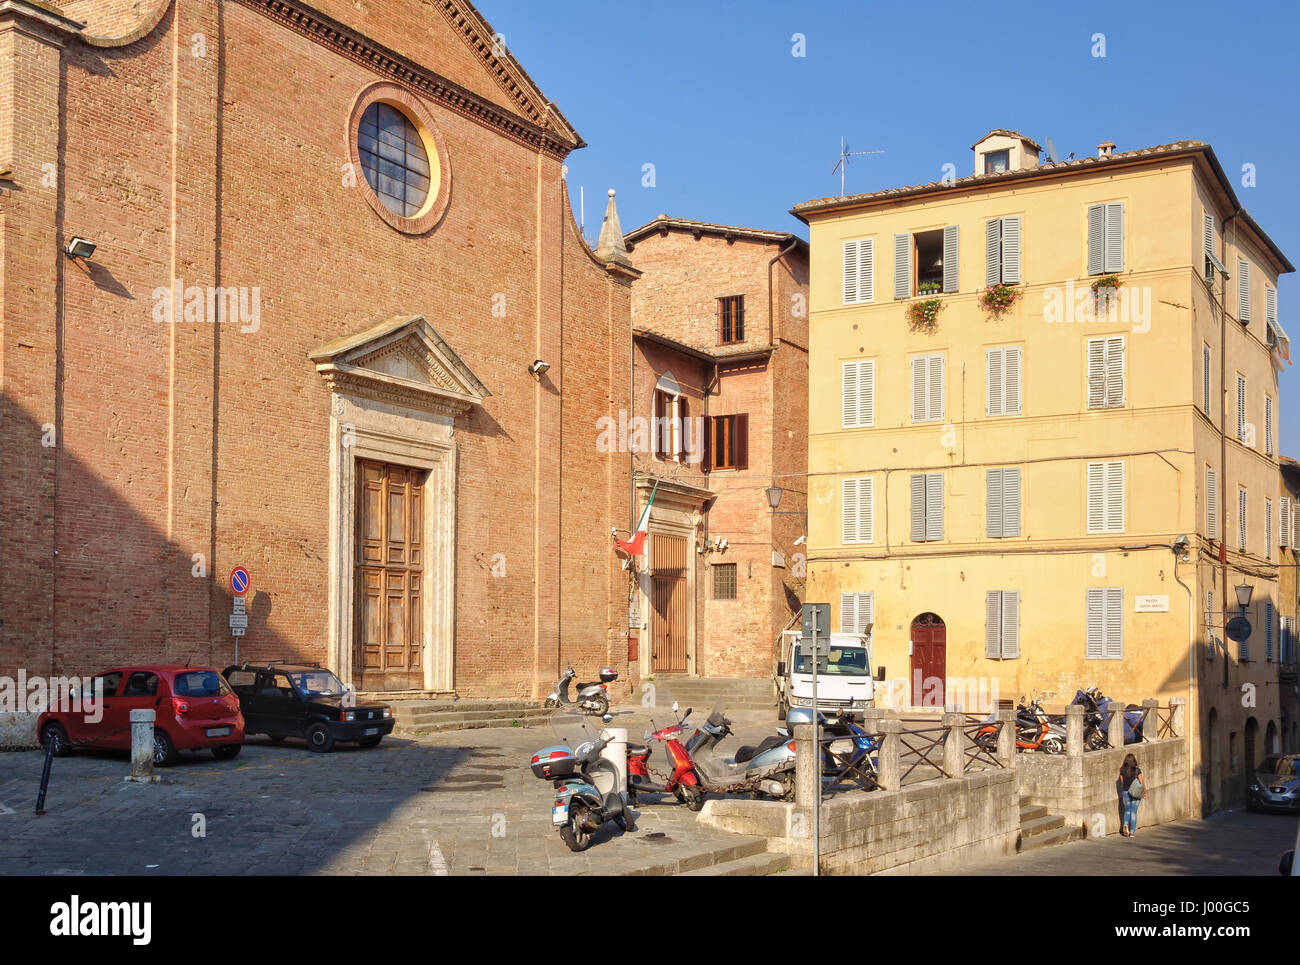 The Chiesa and Piazza di Santo Spirito in Siena, Italy Stock Photo